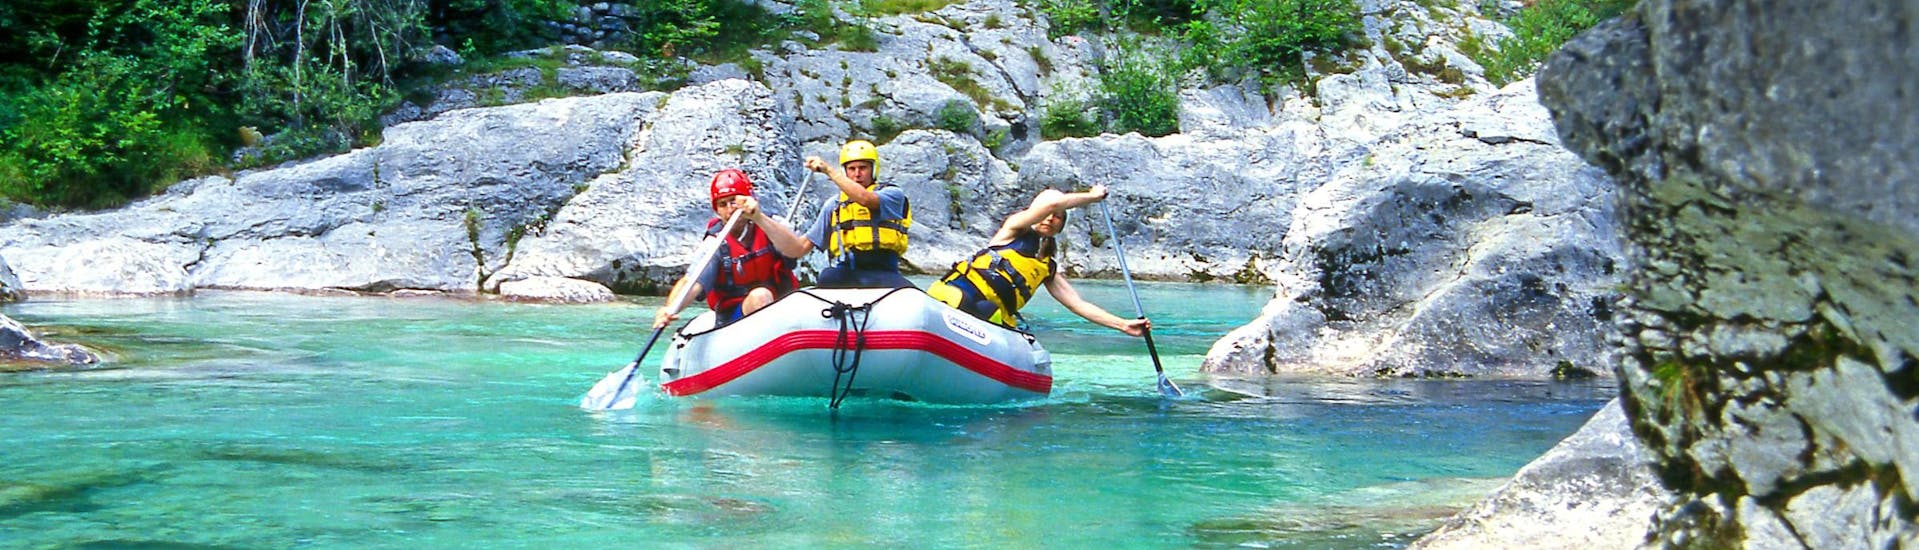 Un grupo de jóvenes disfruta haciendo rafting en Sušec, popular destino para los deportes de agua y de aventura como el rafting y el descenso de barrancos.  